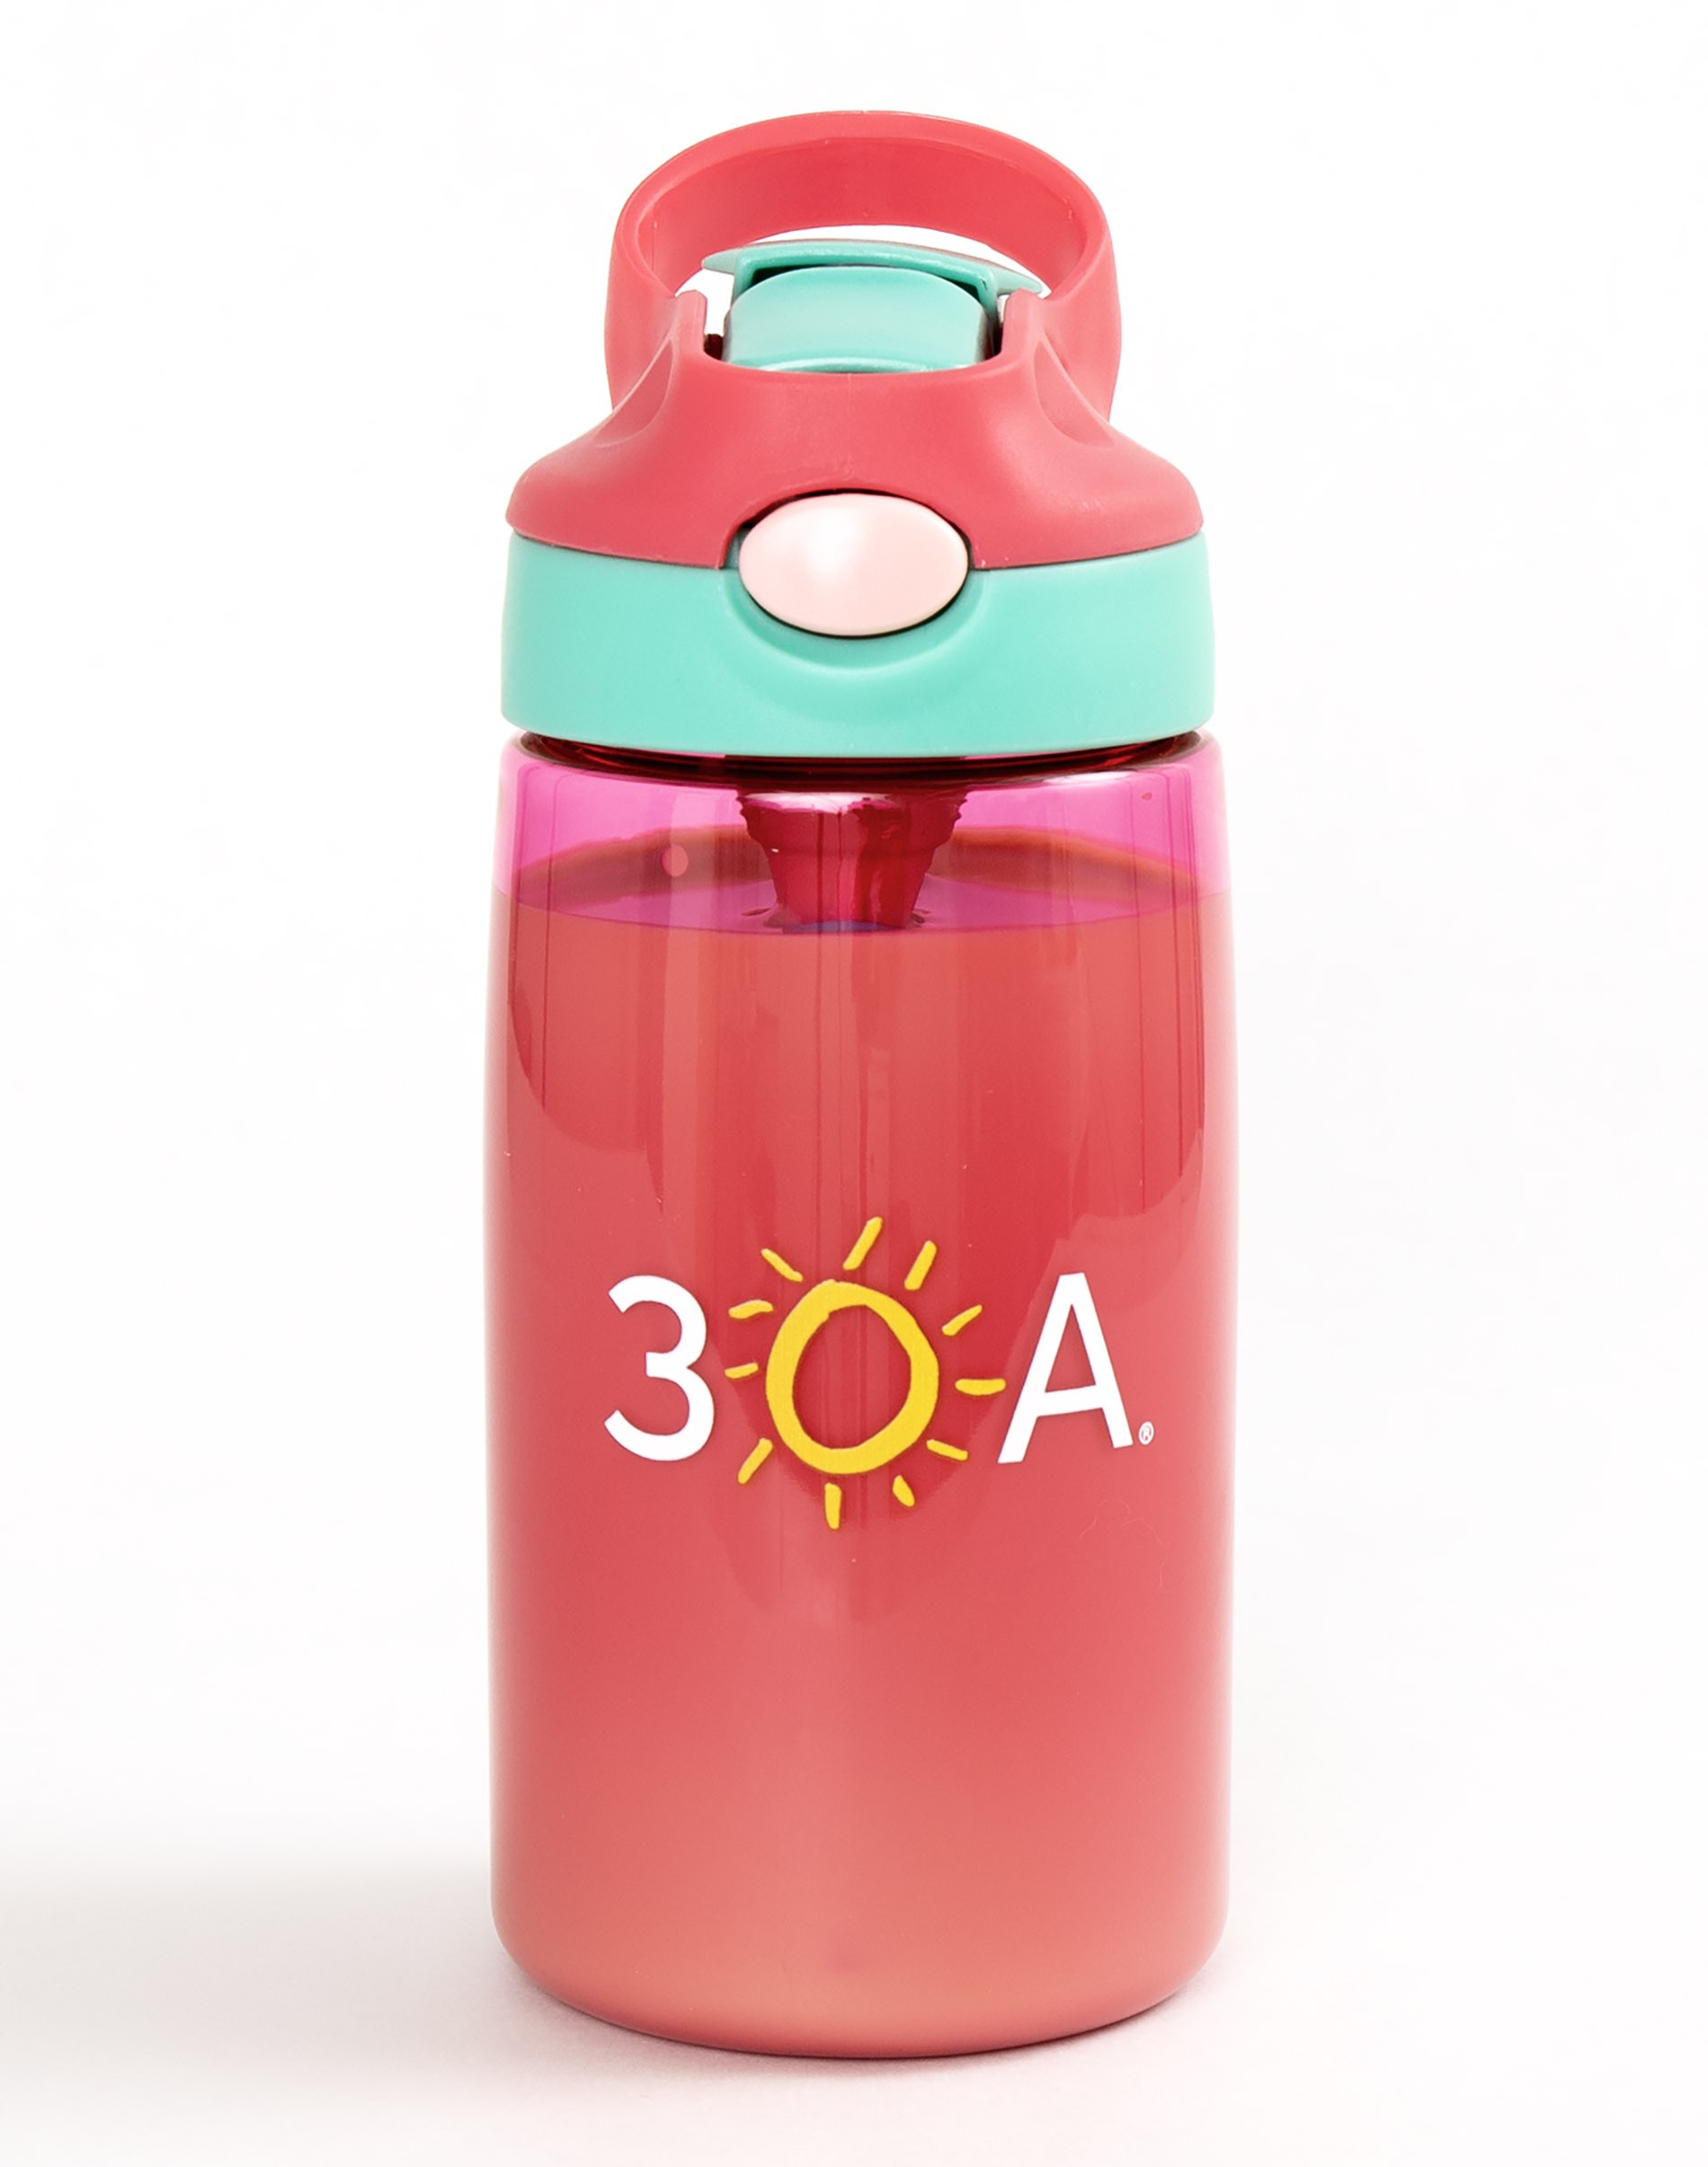 We carry Gadget, Shake Bottle Tritan Plastic 48/20 oz (ECO-CASE)